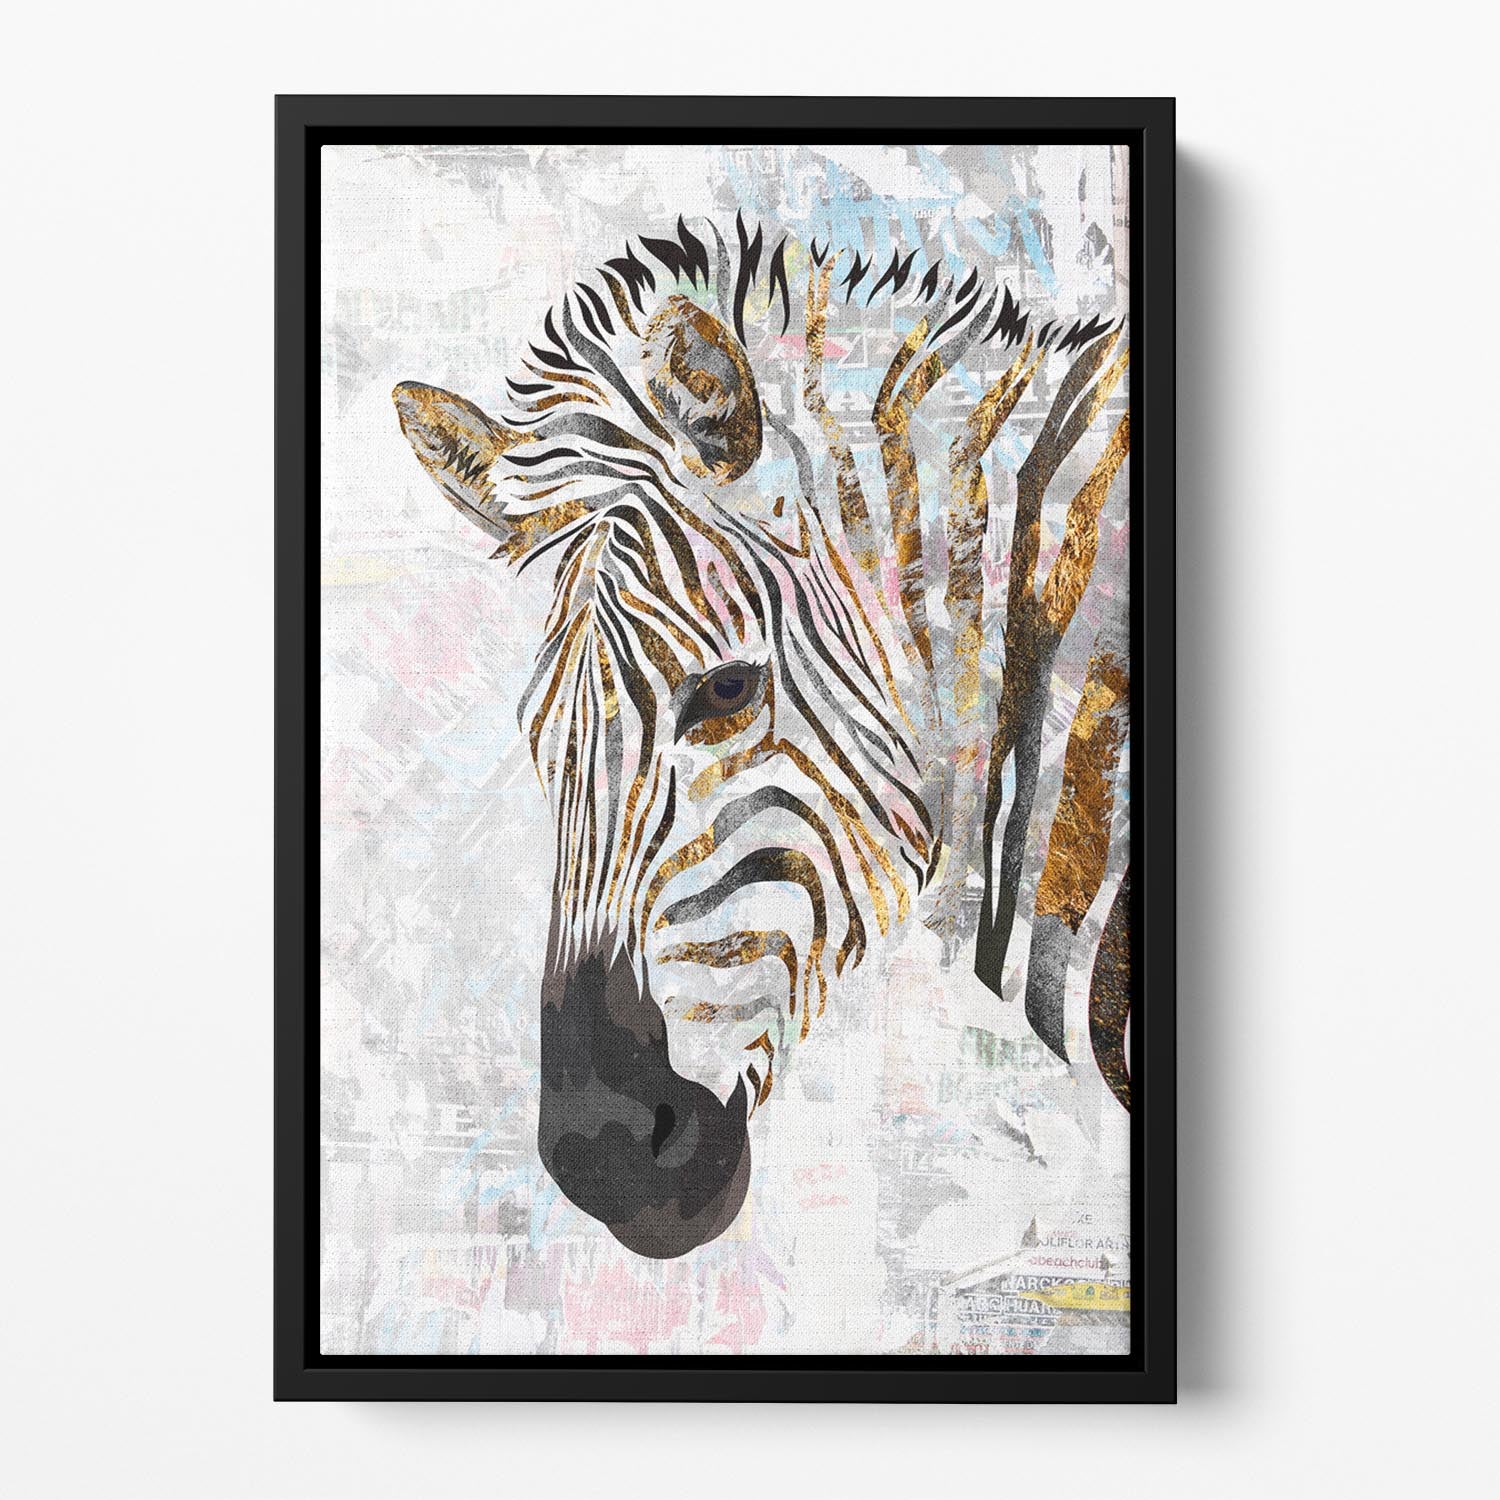 Grunge gold zebra Floating Framed Canvas - 1x - 2